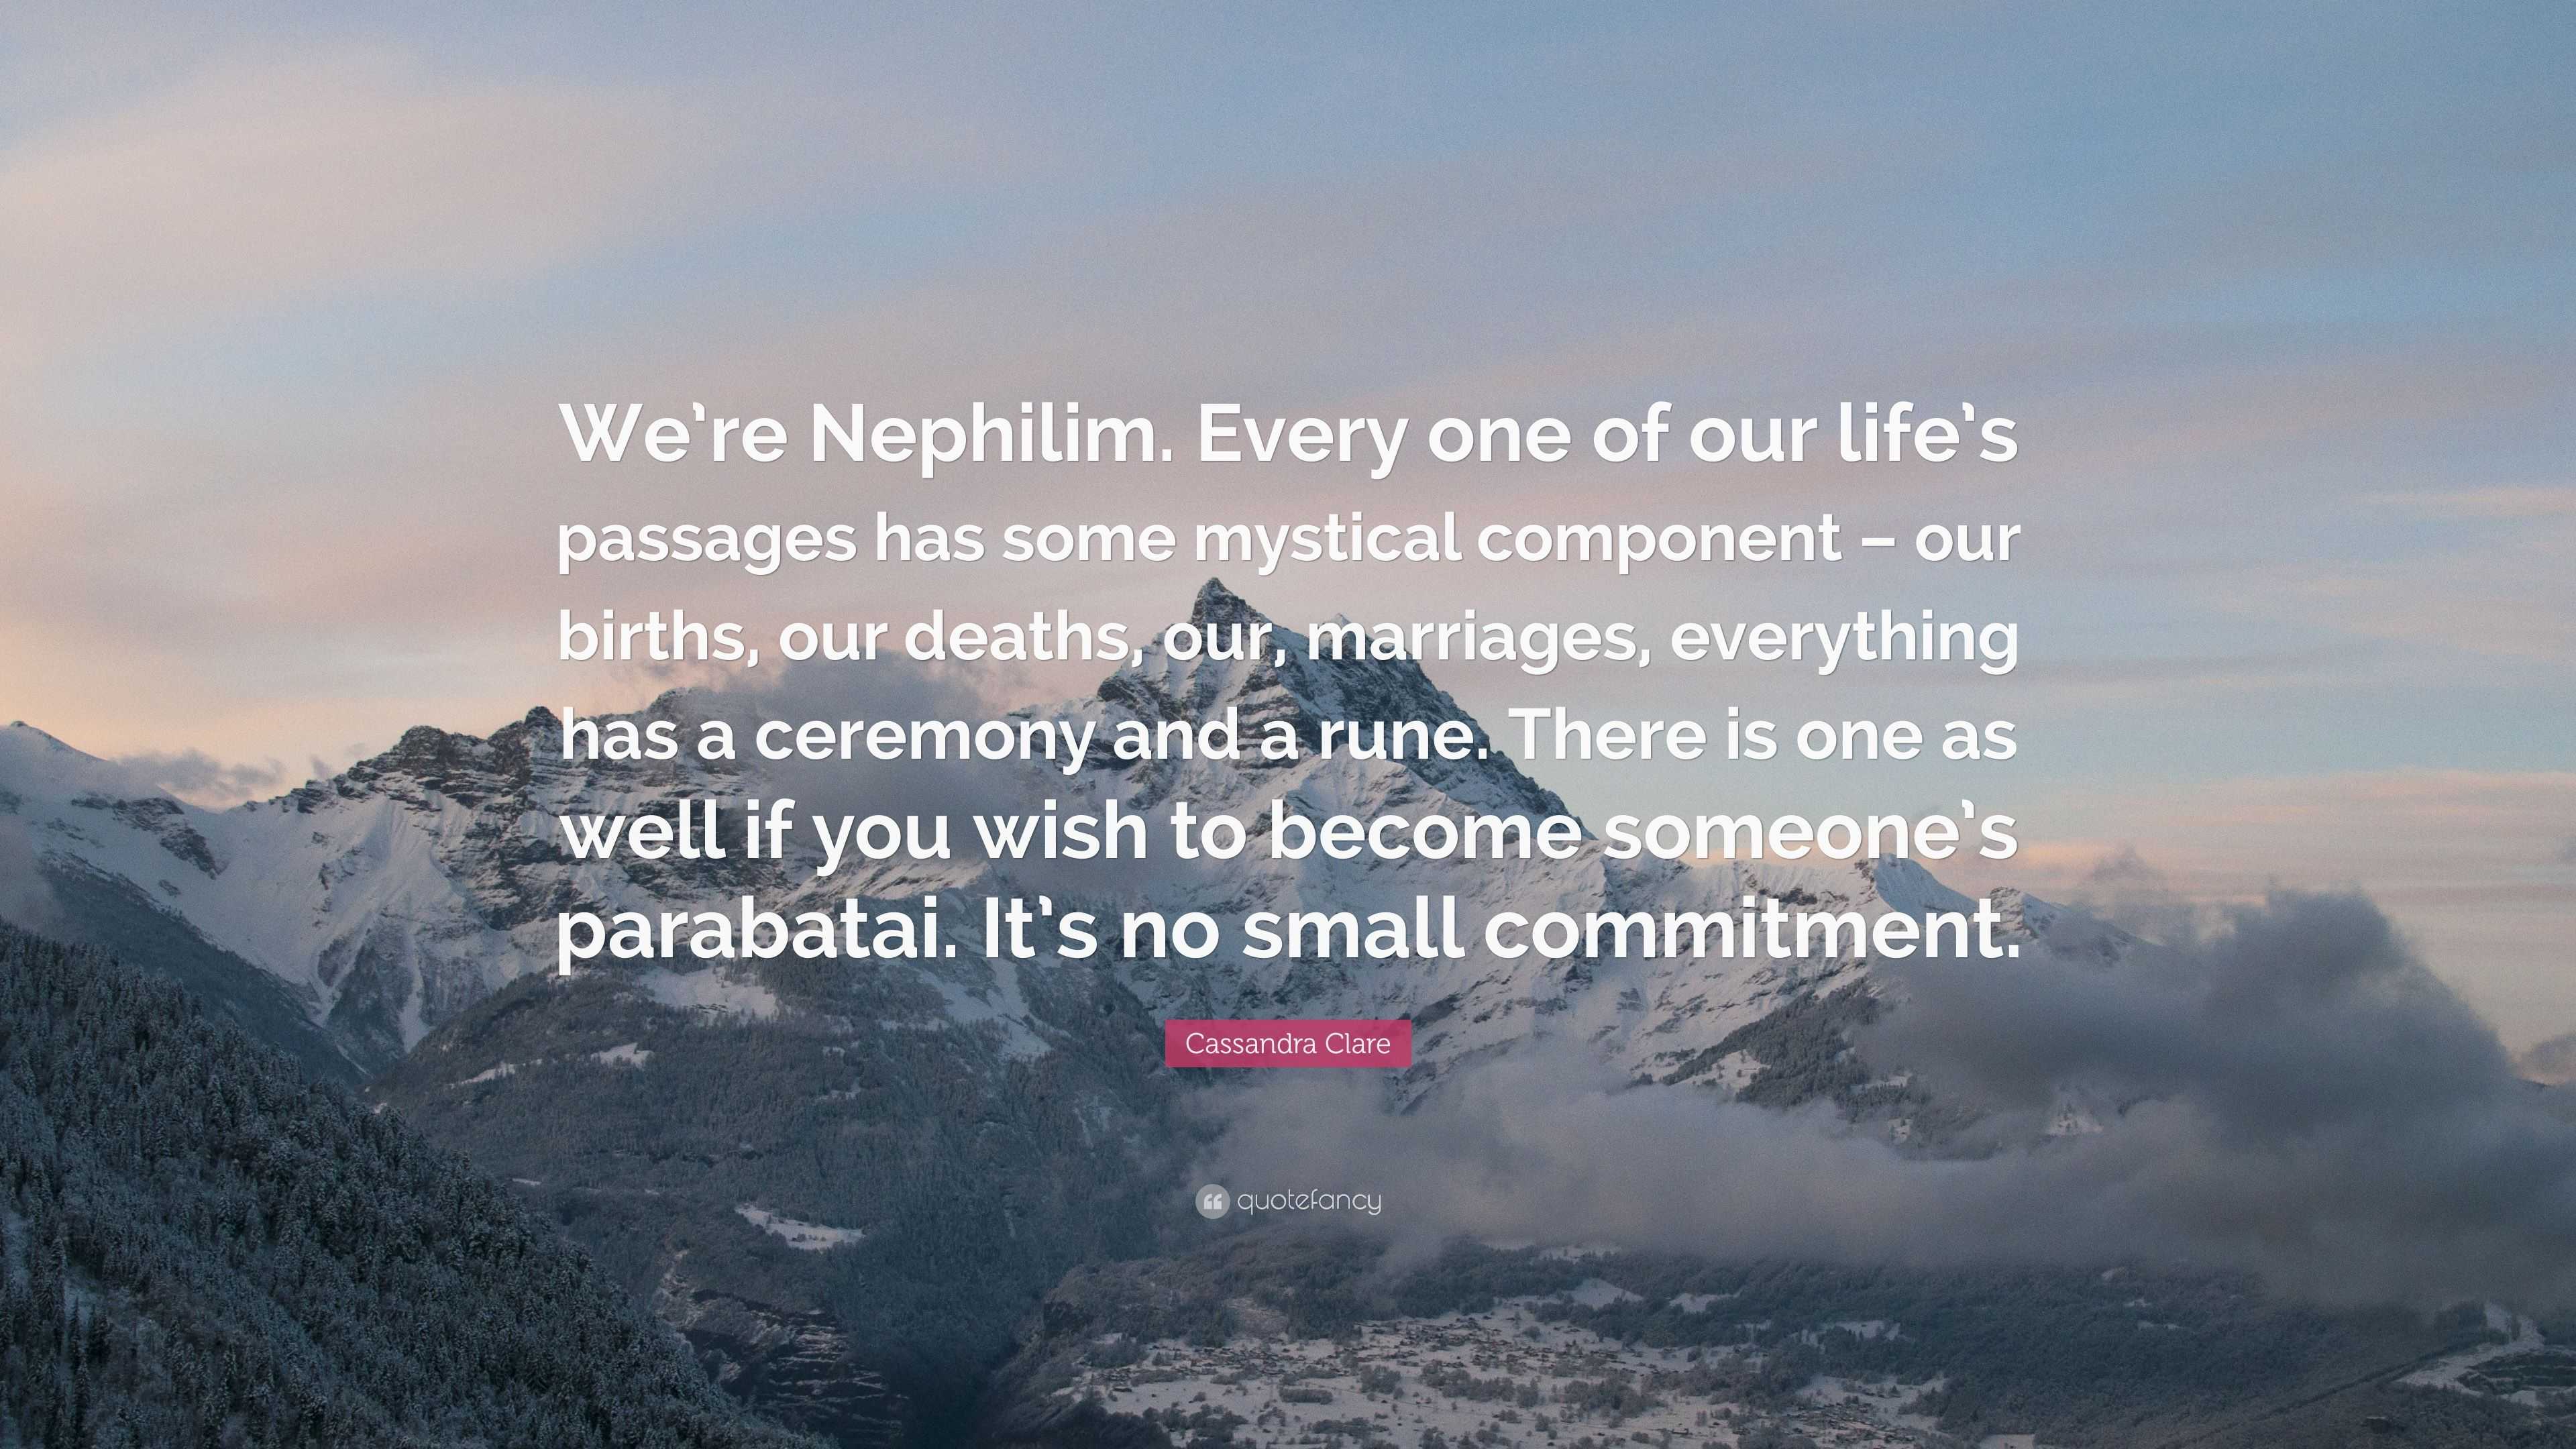 We are Nephilim